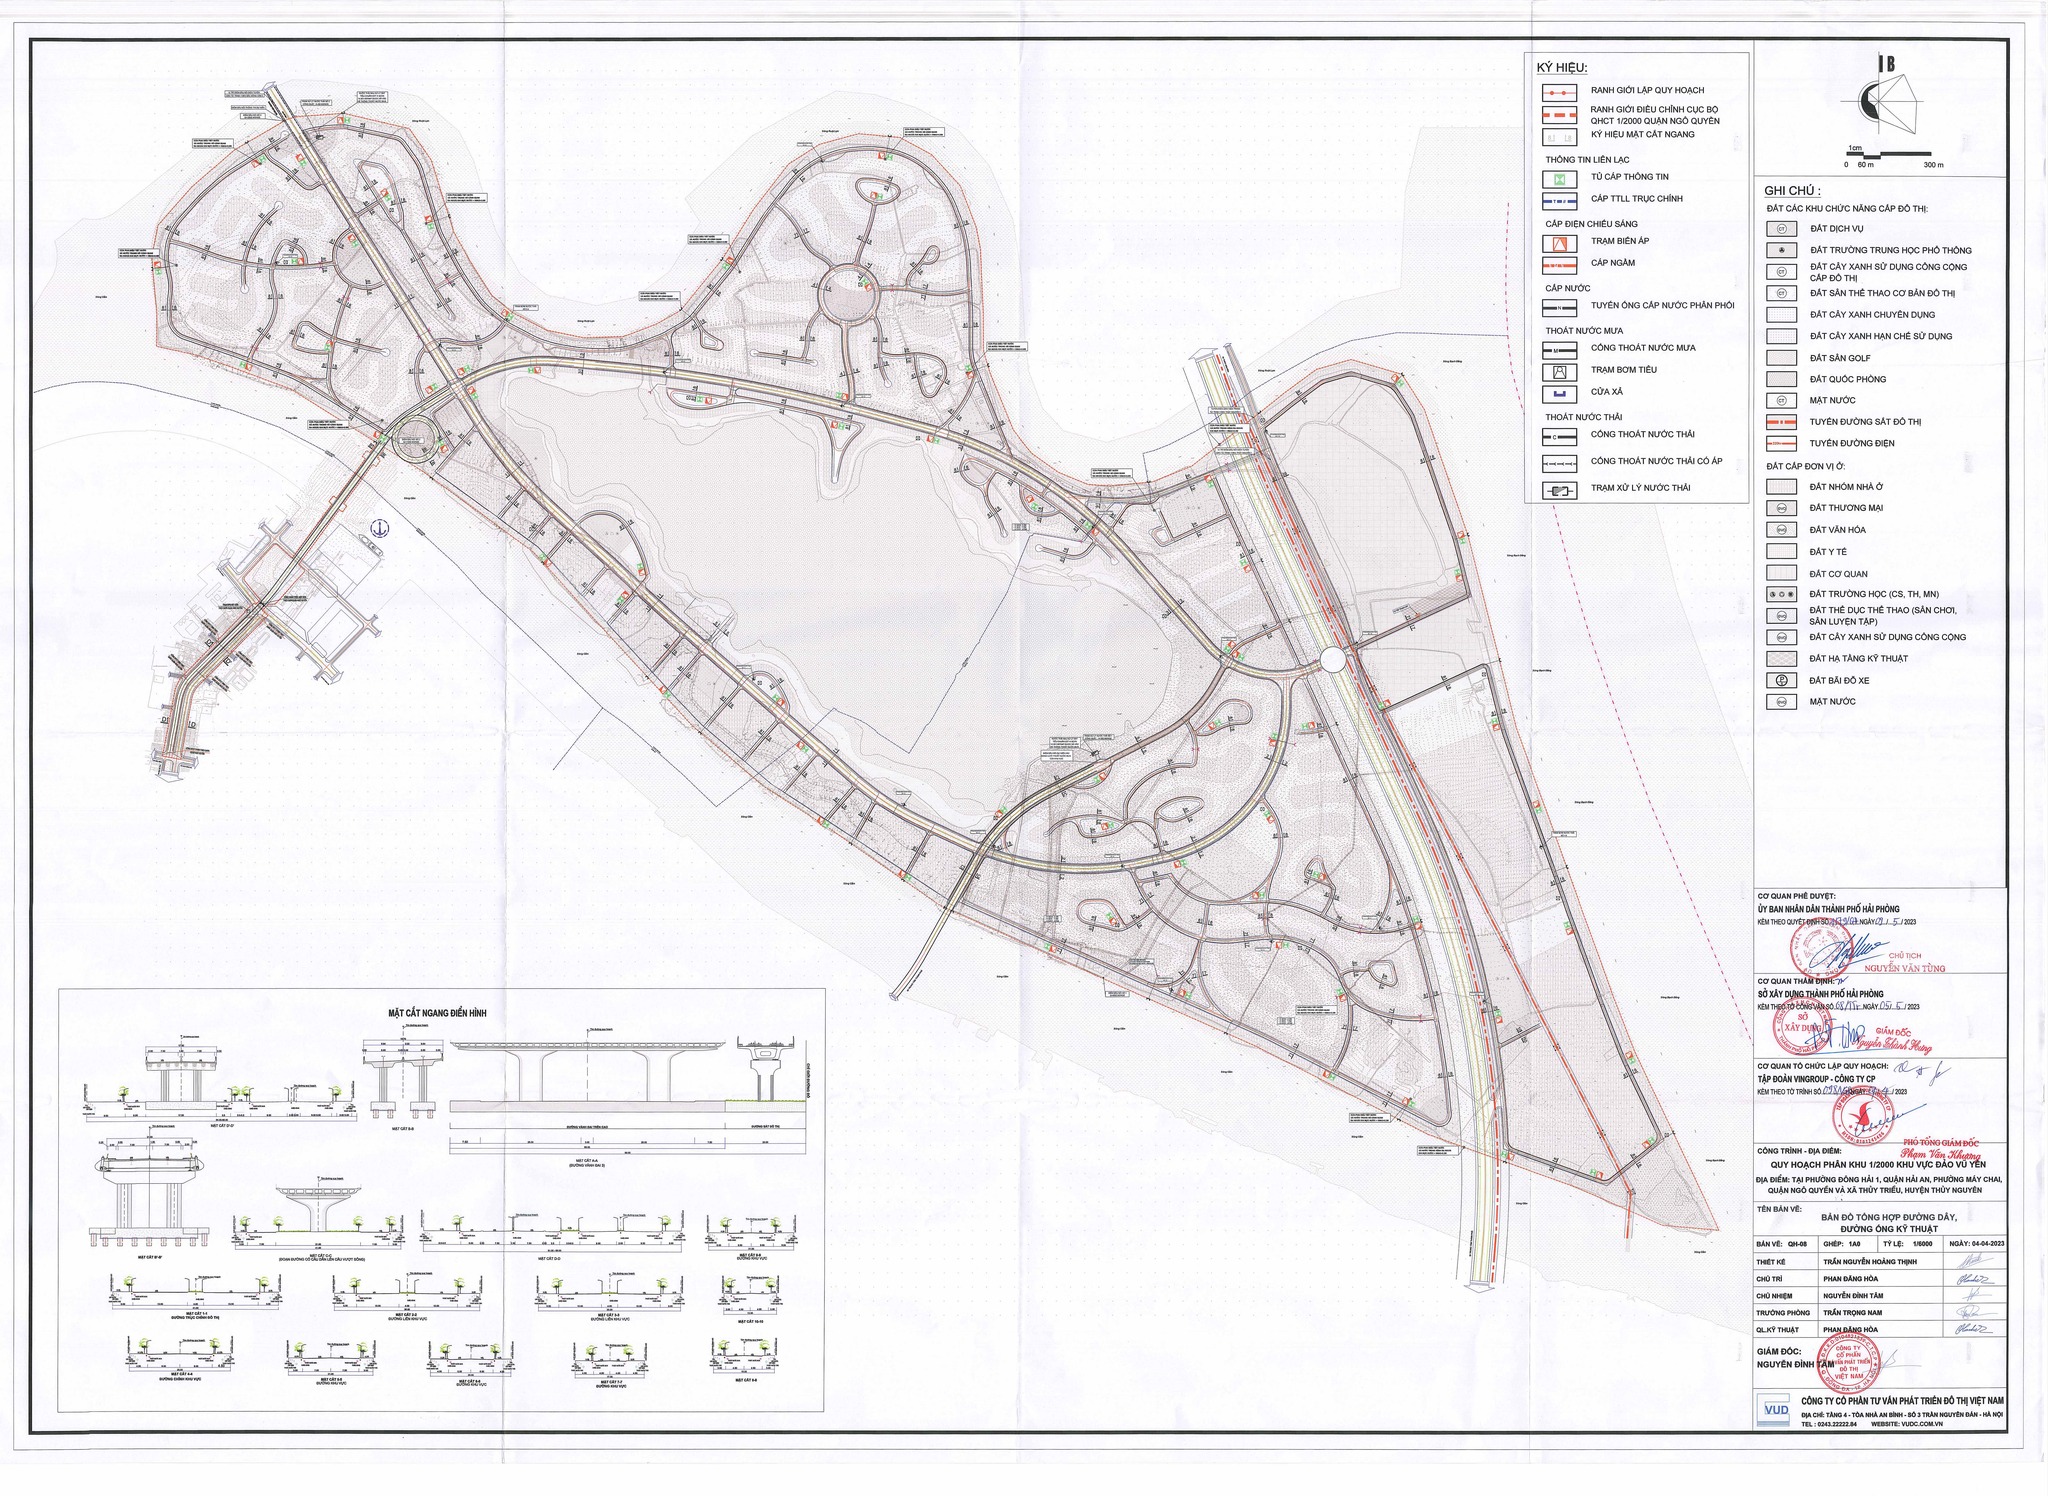 Bản đồ tổng hợp đường dây, đường ống kỹ thuật dự án đảo Vũ Yên Hải Phòng